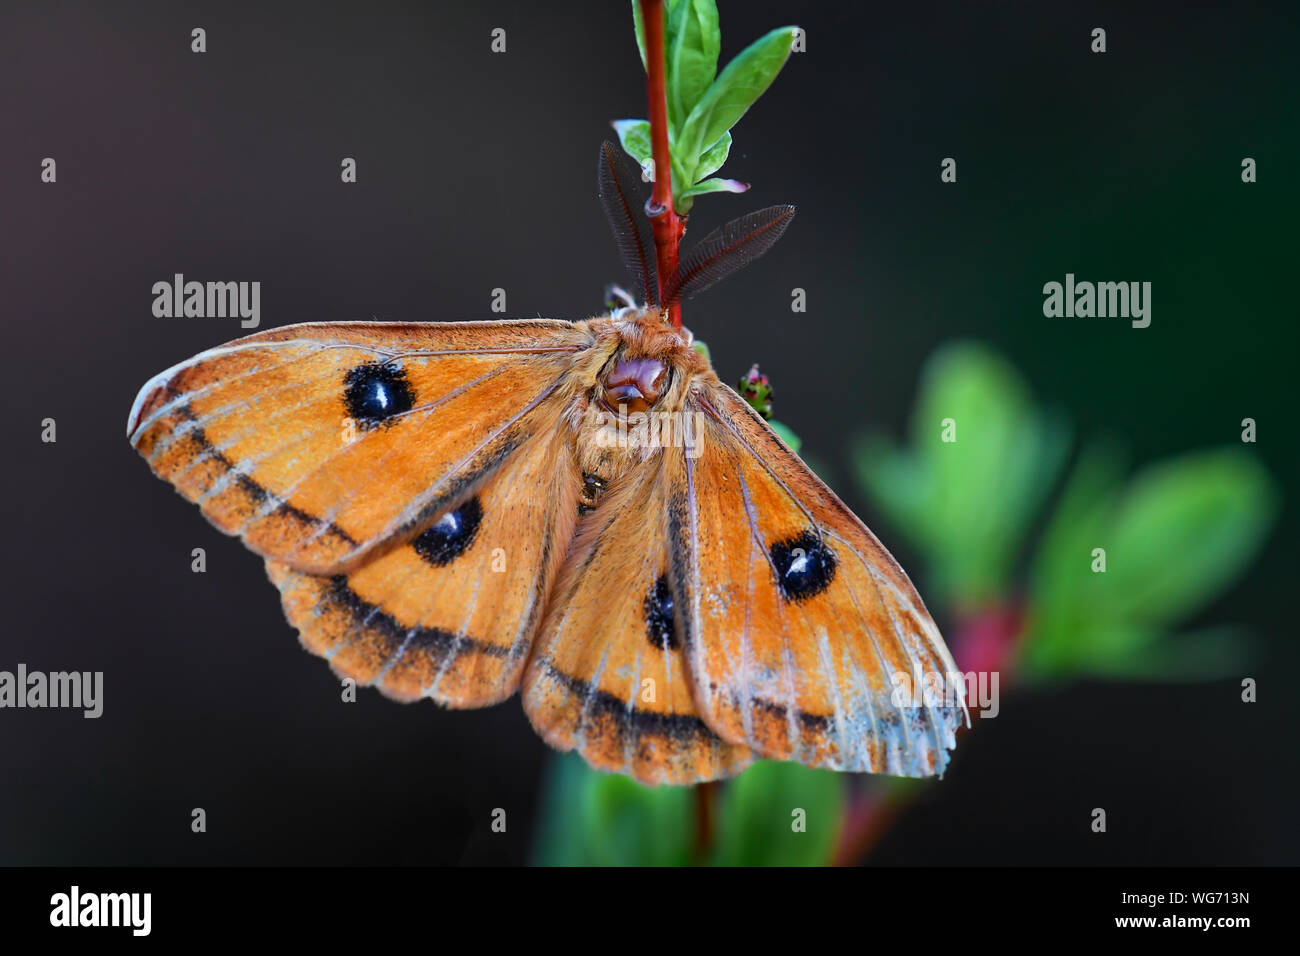 Aglia tau tau - Empereur, belle espèce des forêts et zones boisées avec lettre tau sur les ailes, en République tchèque. Banque D'Images